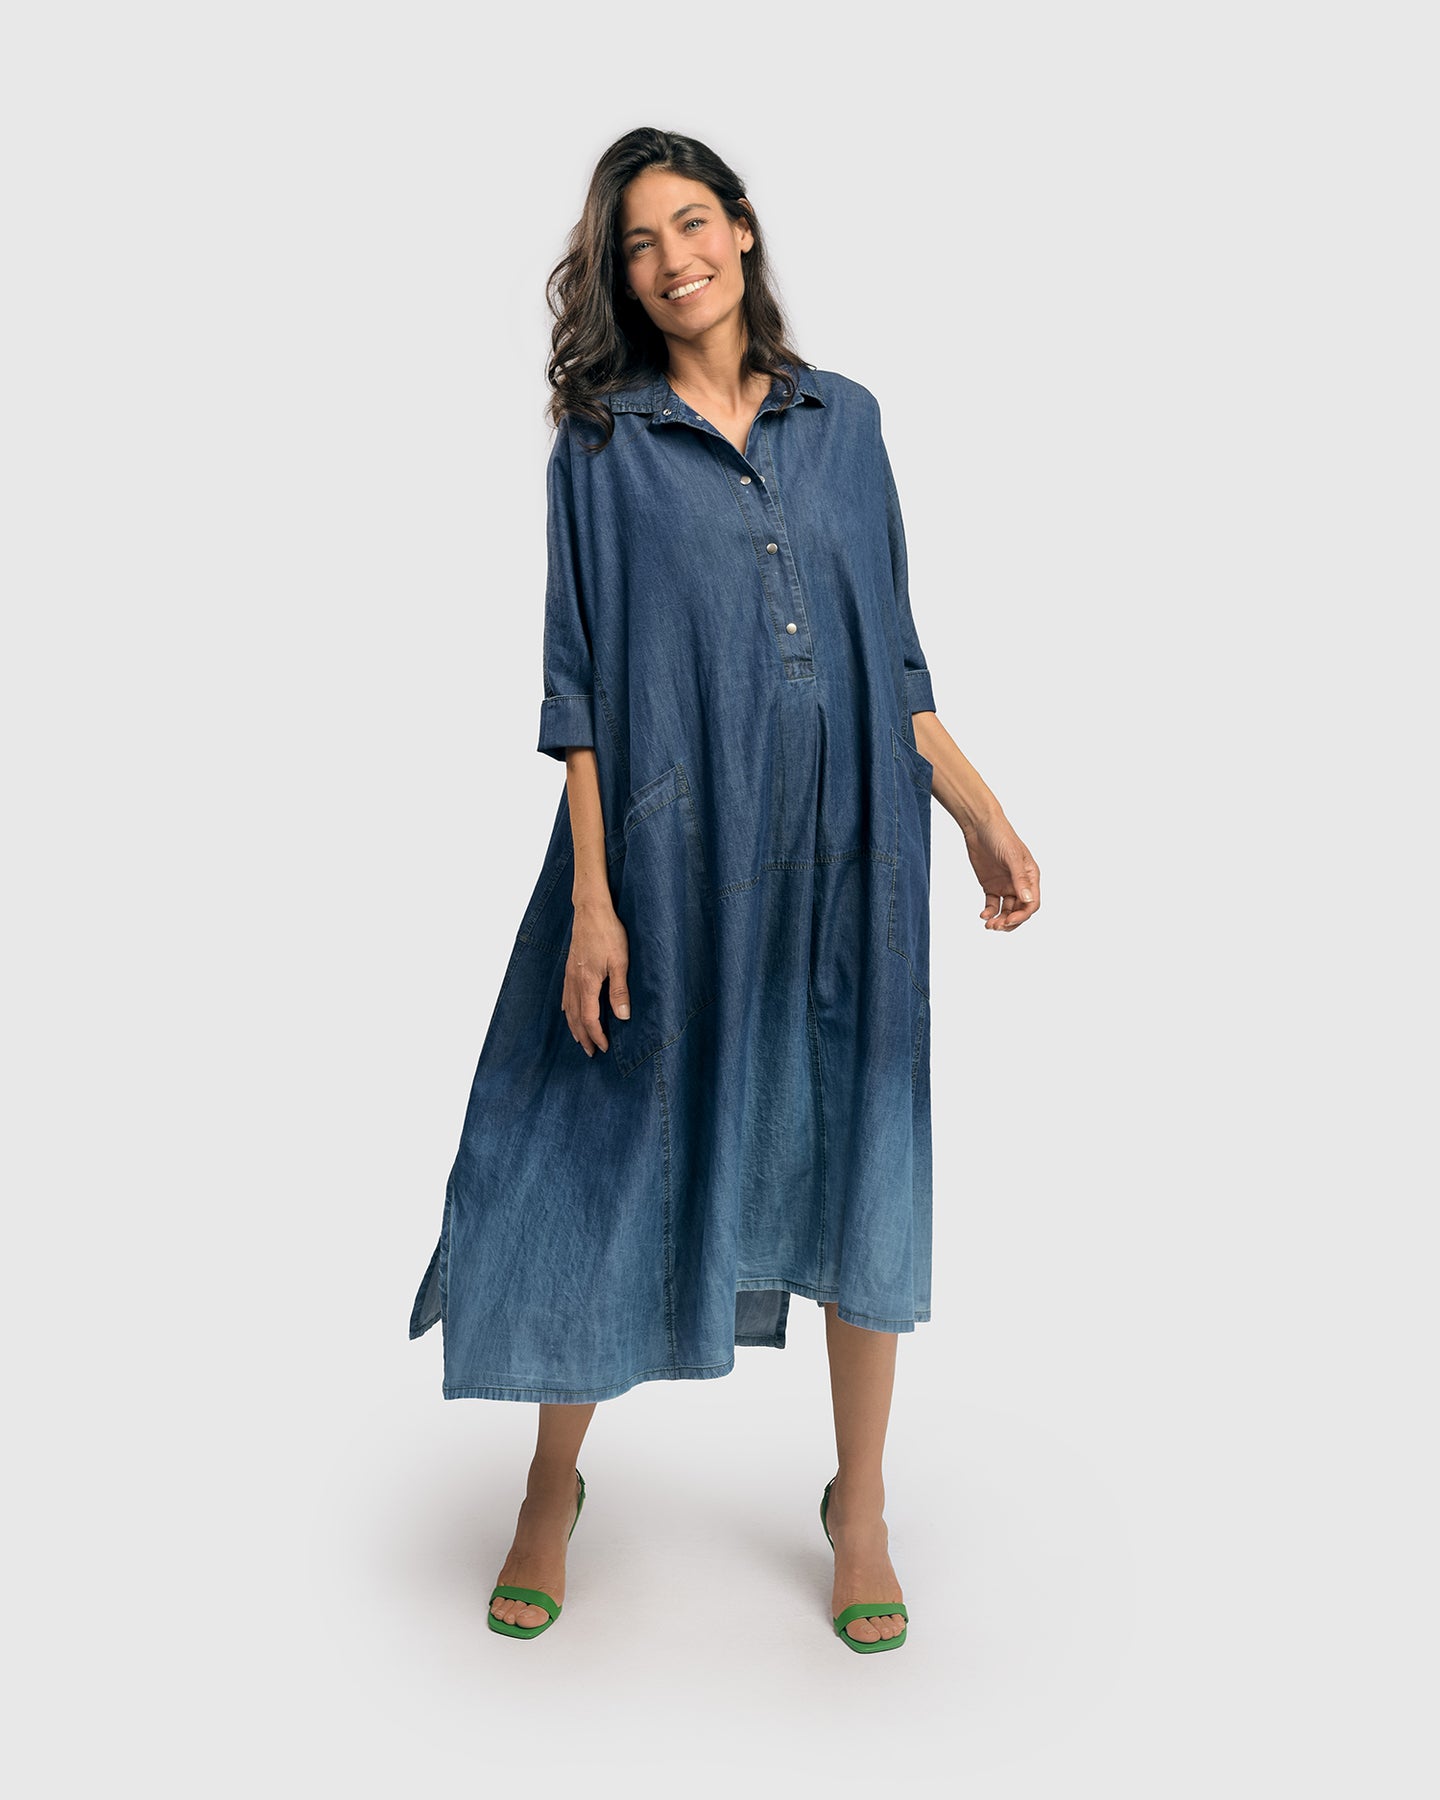 Frontwalk Womens Vintage Long Sleeve Jean Shirt Dress Button Up Denim  Casual Shift Dress with Pockets Light Blue L - Walmart.com